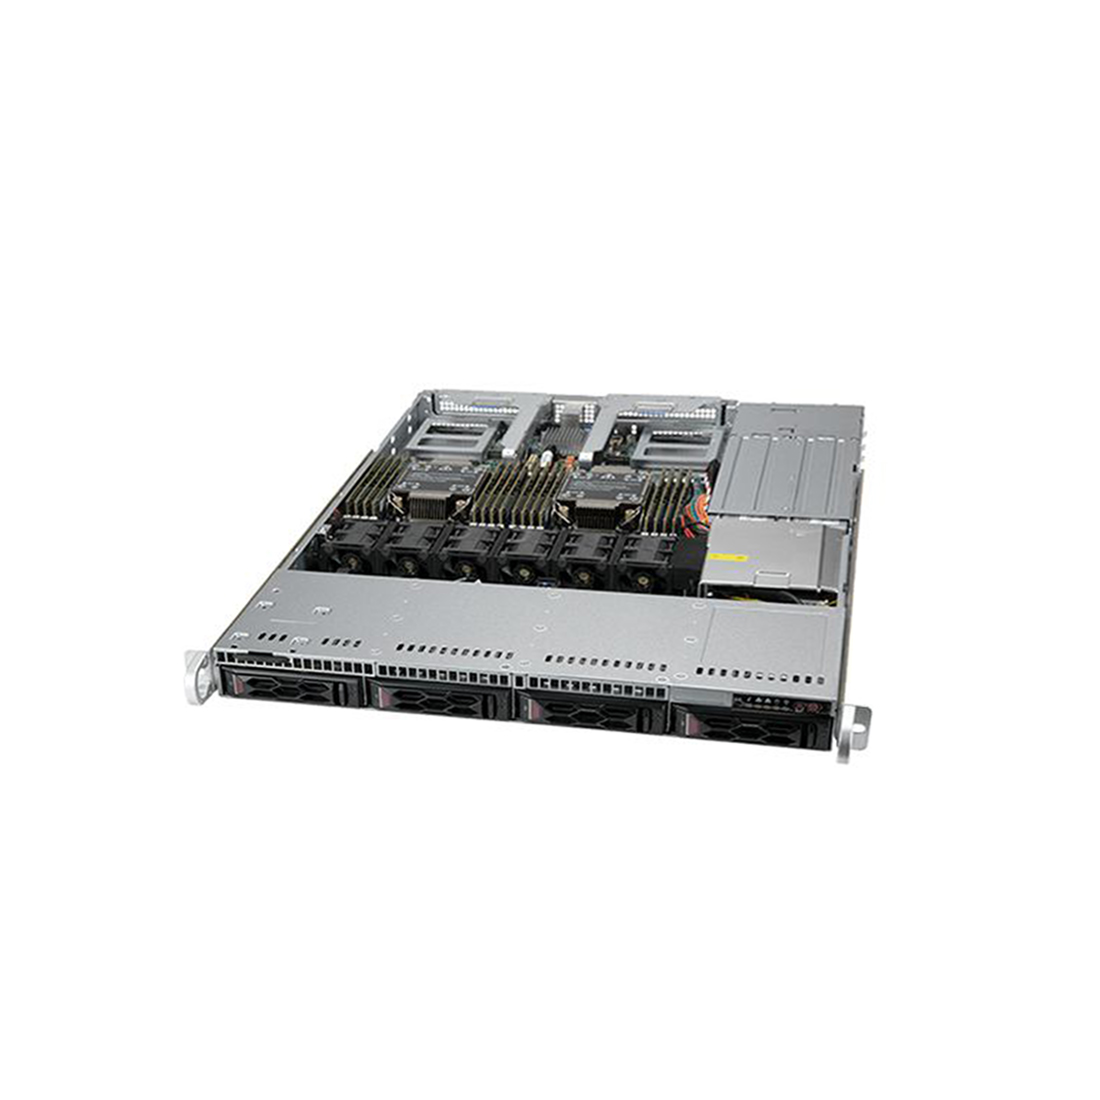 Серверная платформа SUPERMICRO SYS-610C-TR - купить по цене 980 040 тг. в интернет-магазине Forcecom.kz